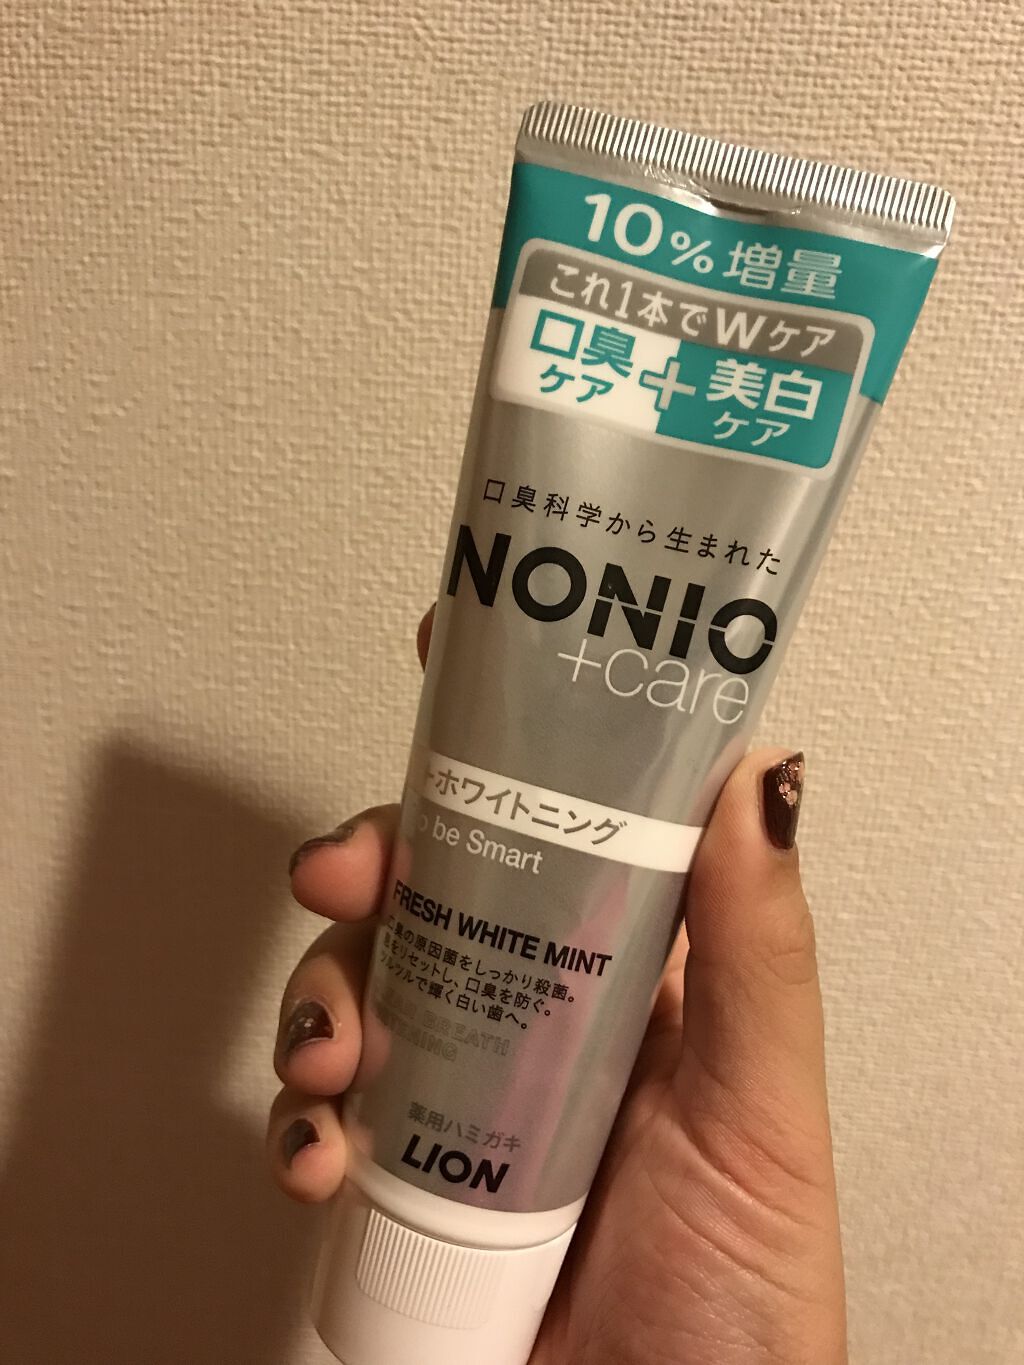 NONIOプラスホワイトニングハミガキ/NONIO/歯磨き粉の動画クチコミ3つ目